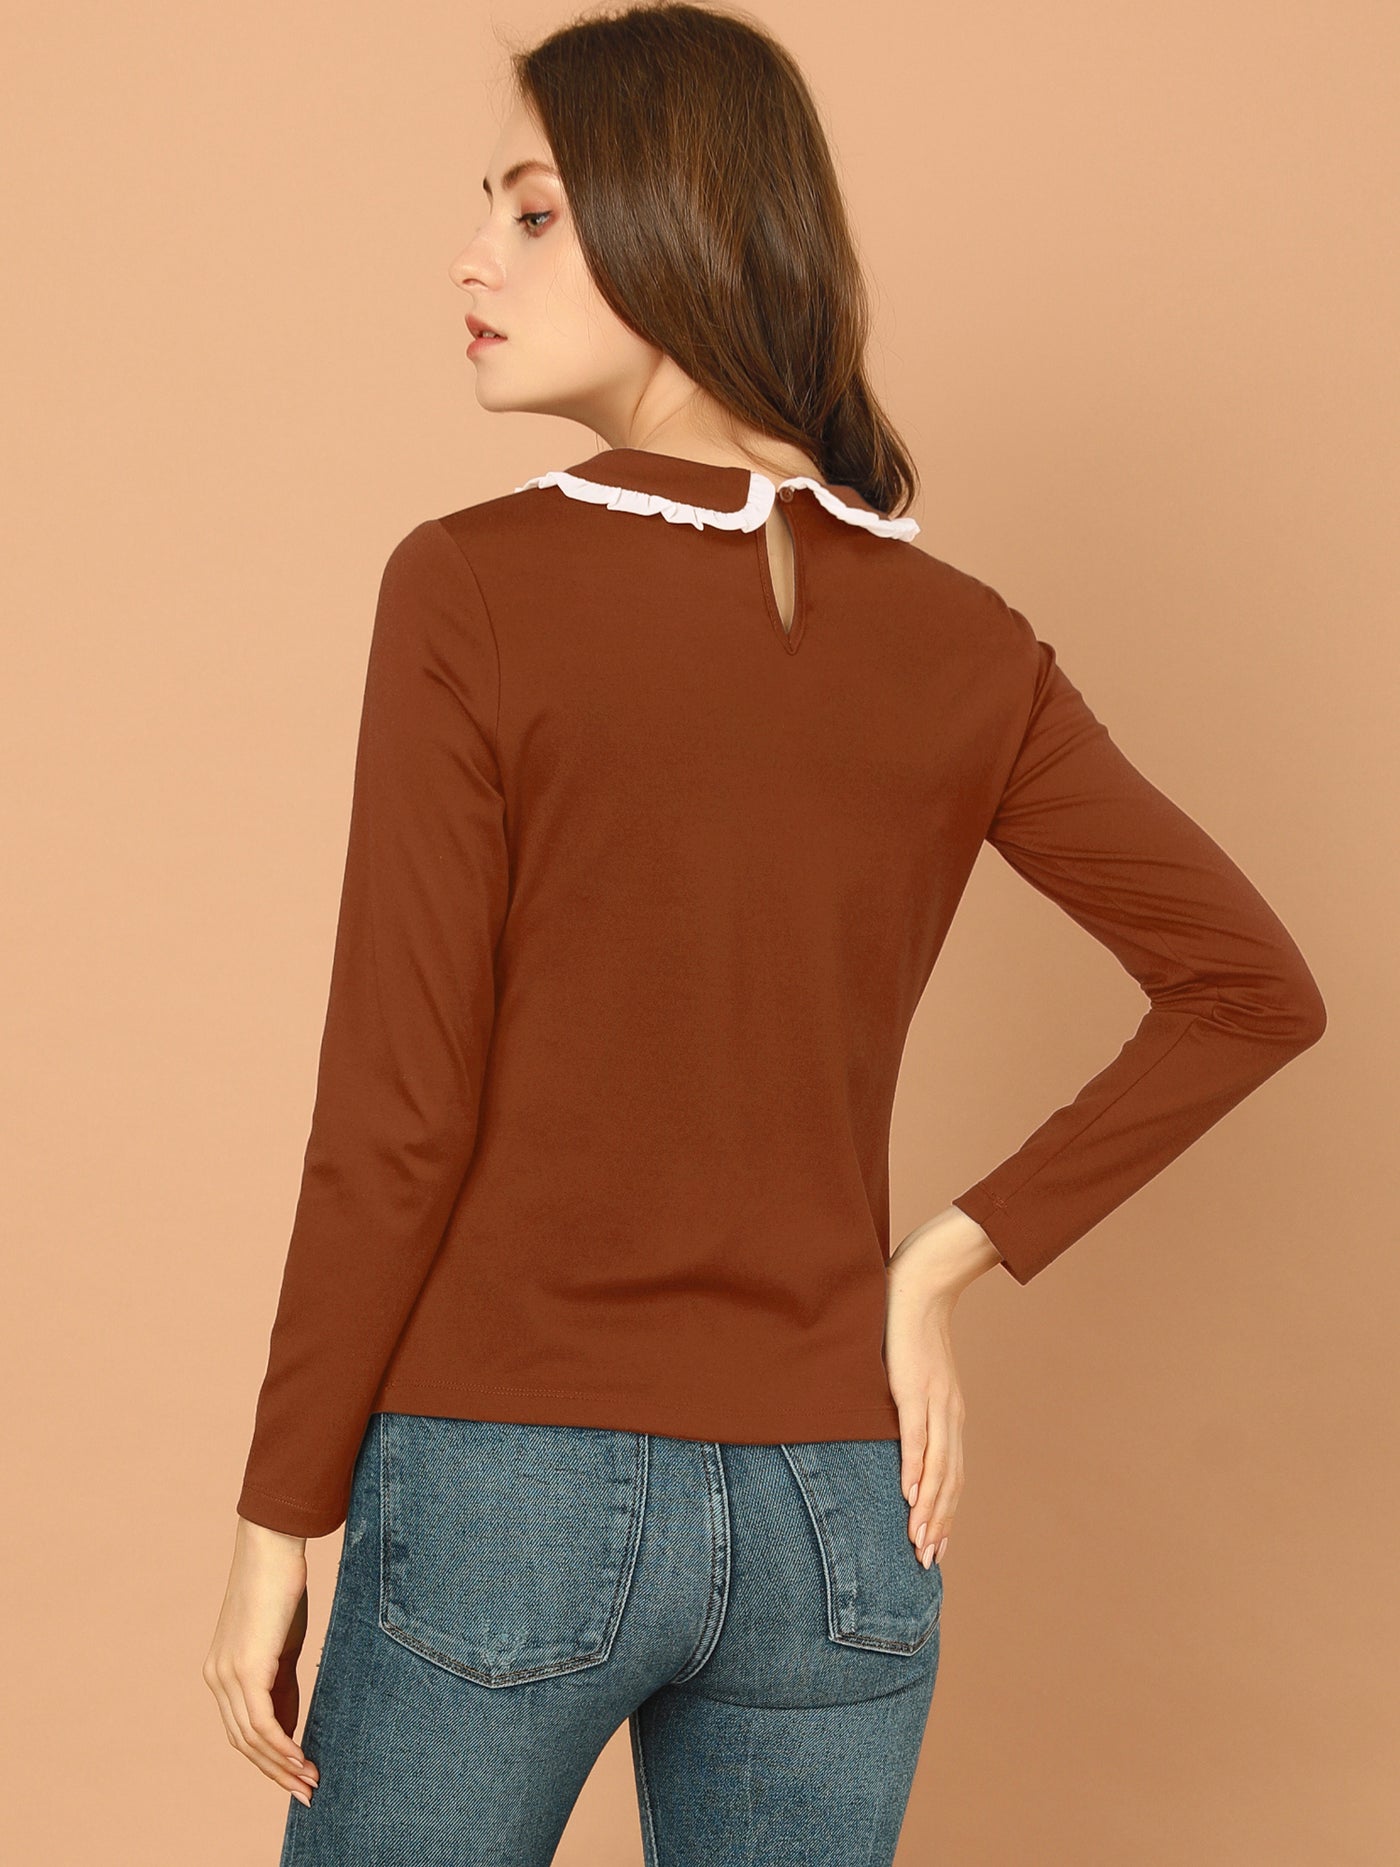 Allegra K Peter Pan Collar Blouse Basic Knit T-Shirt Long Sleeve Shirt